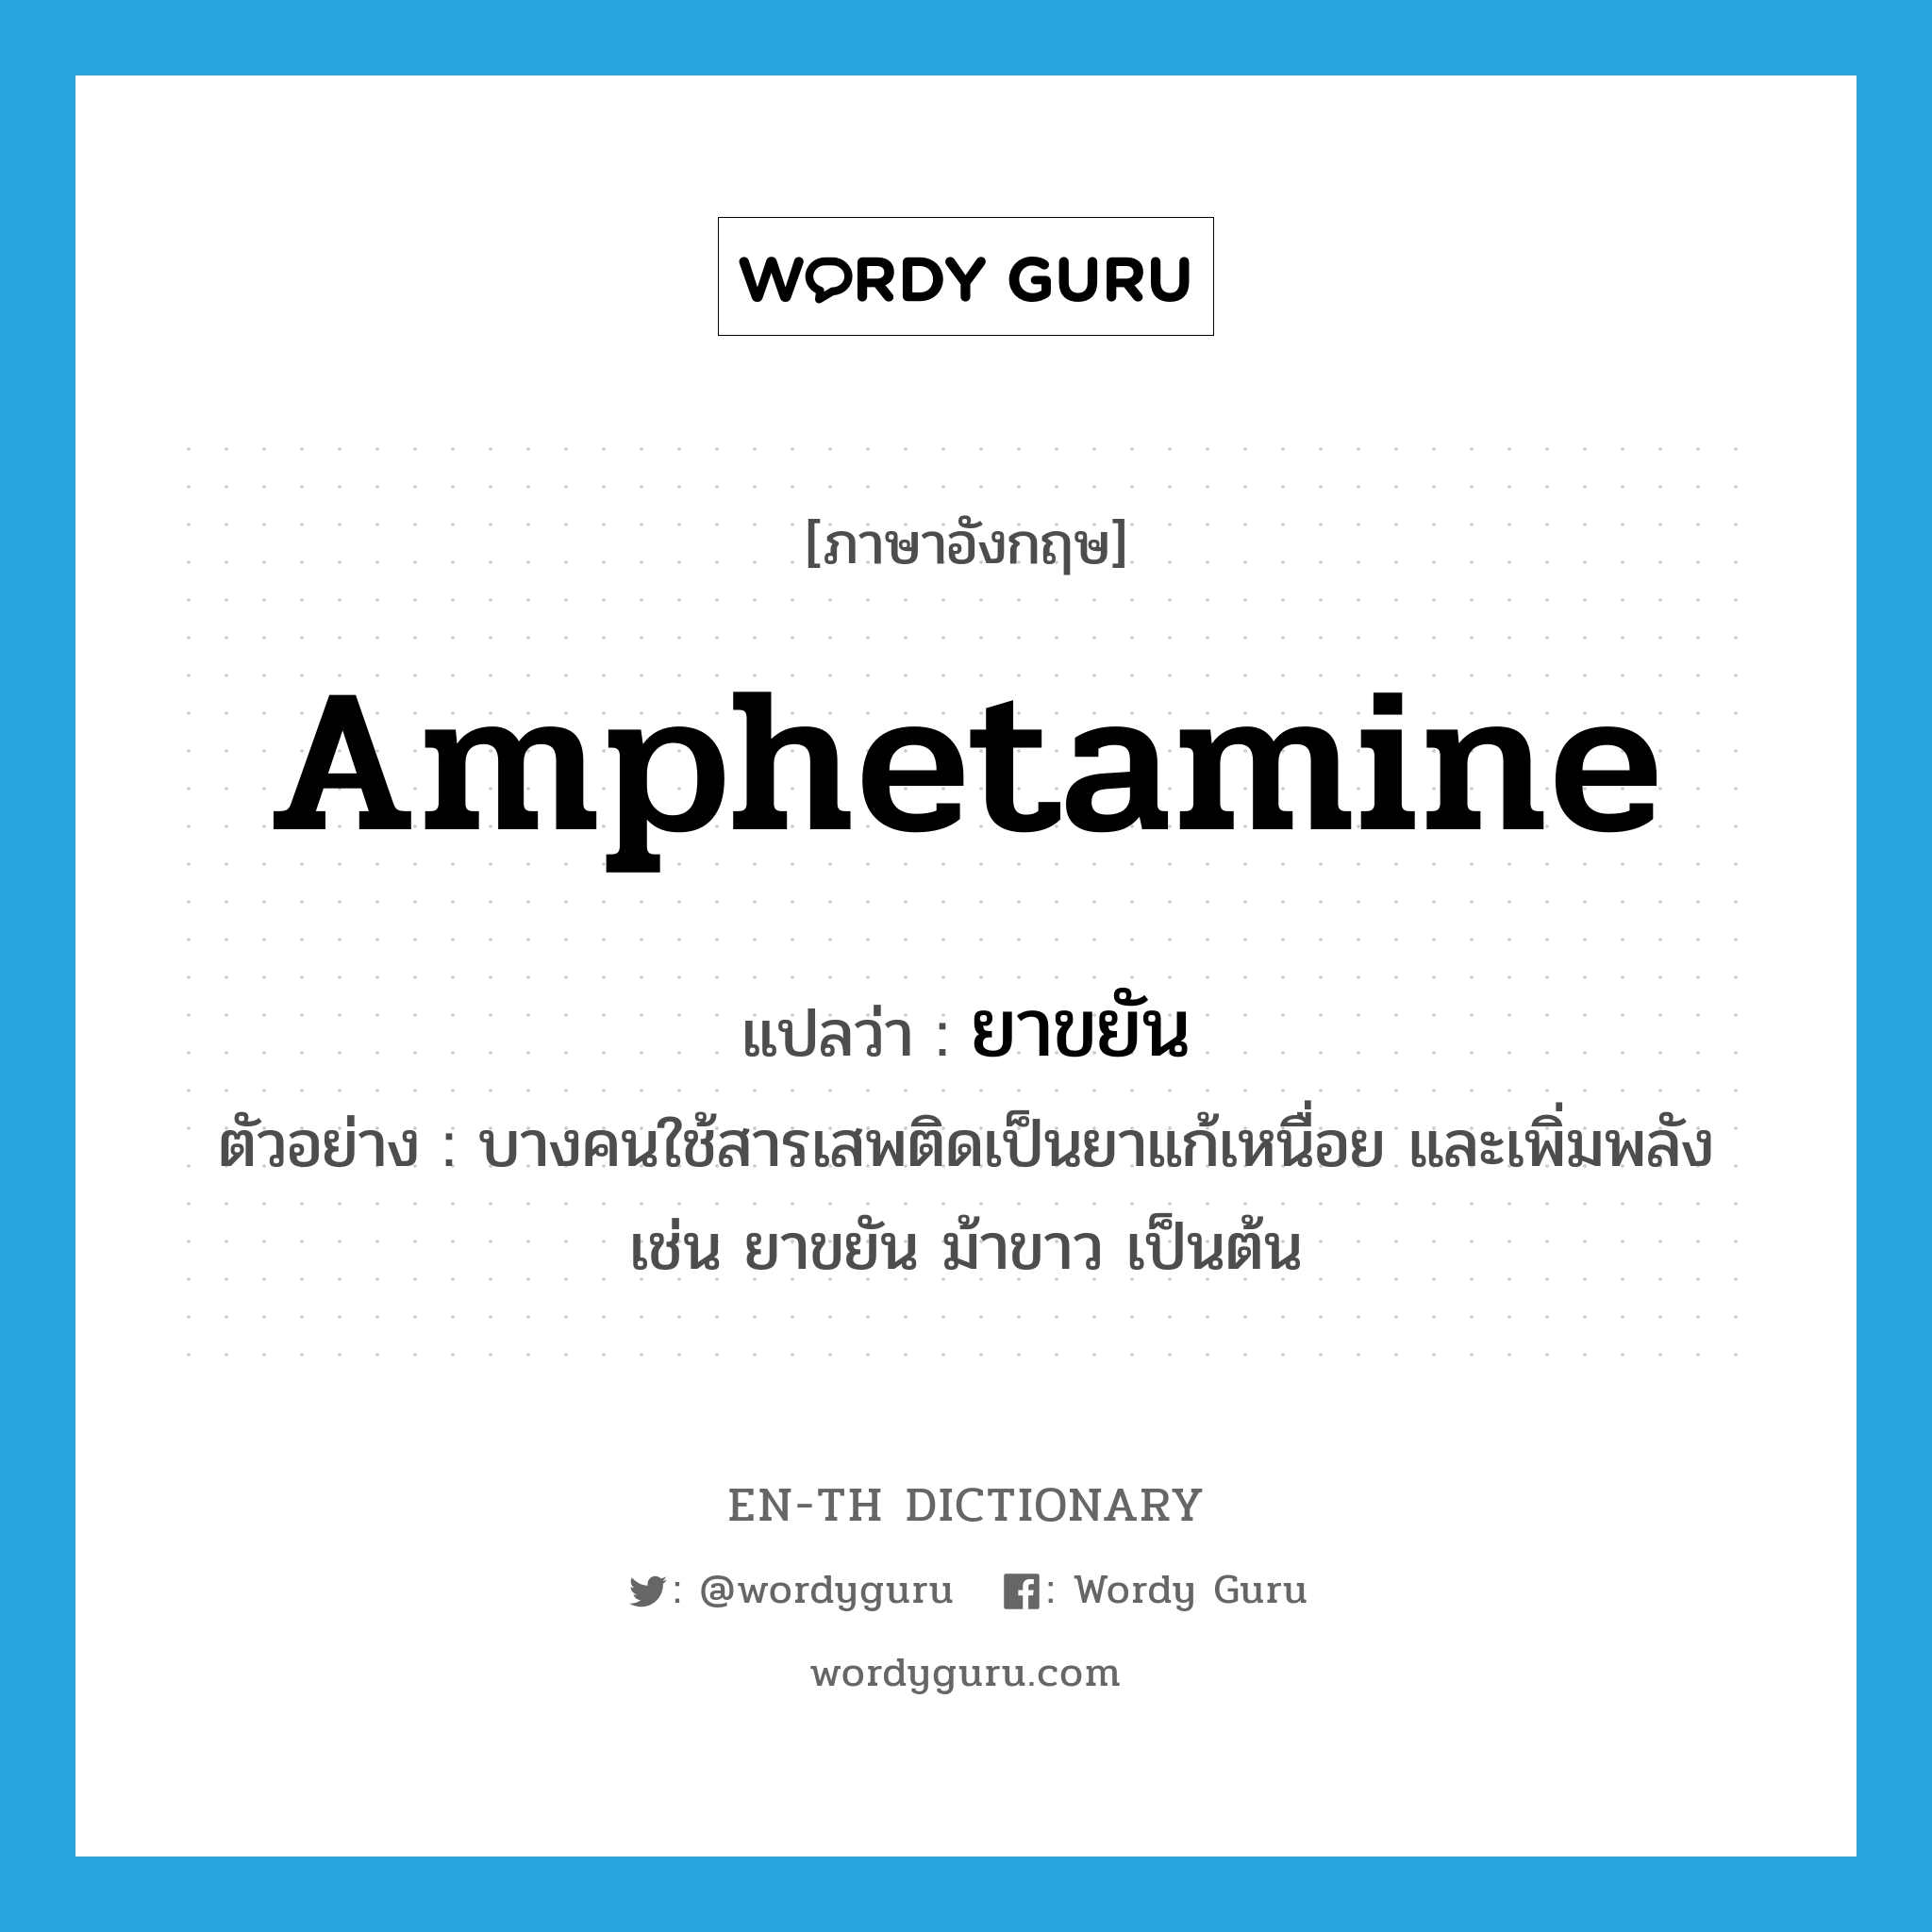 amphetamine แปลว่า?, คำศัพท์ภาษาอังกฤษ amphetamine แปลว่า ยาขยัน ประเภท N ตัวอย่าง บางคนใช้สารเสพติดเป็นยาแก้เหนื่อย และเพิ่มพลัง เช่น ยาขยัน ม้าขาว เป็นต้น หมวด N